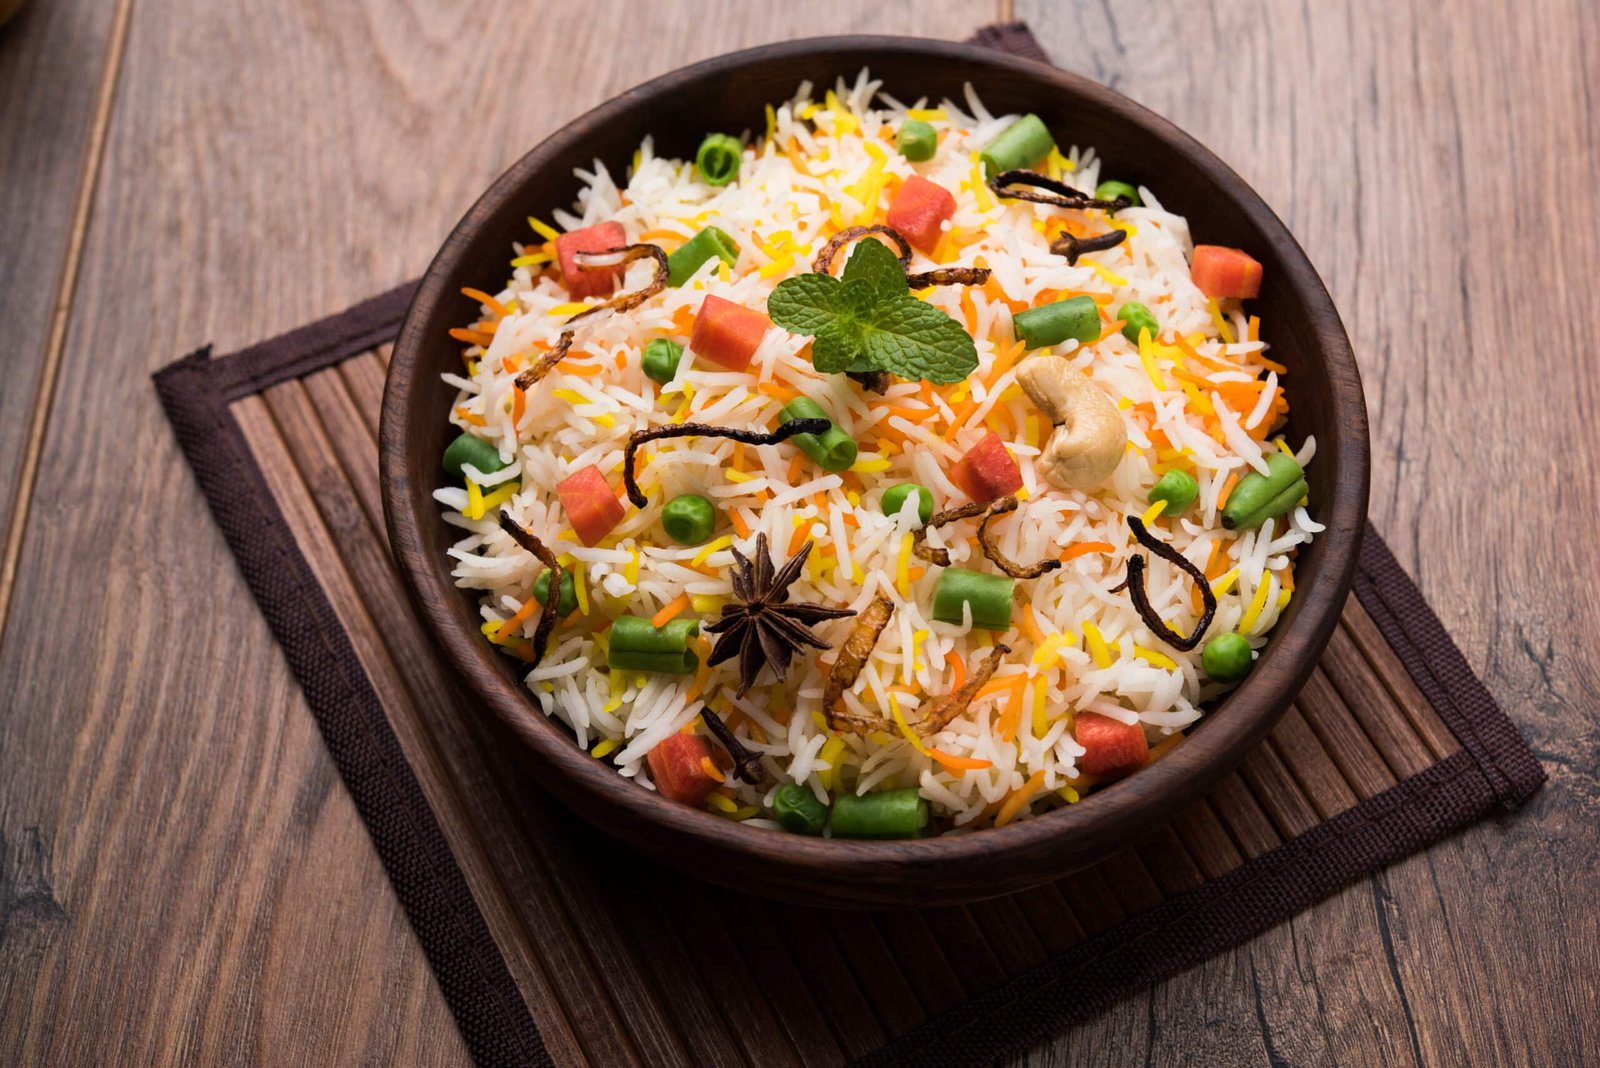 konjac fried rice in a bowl